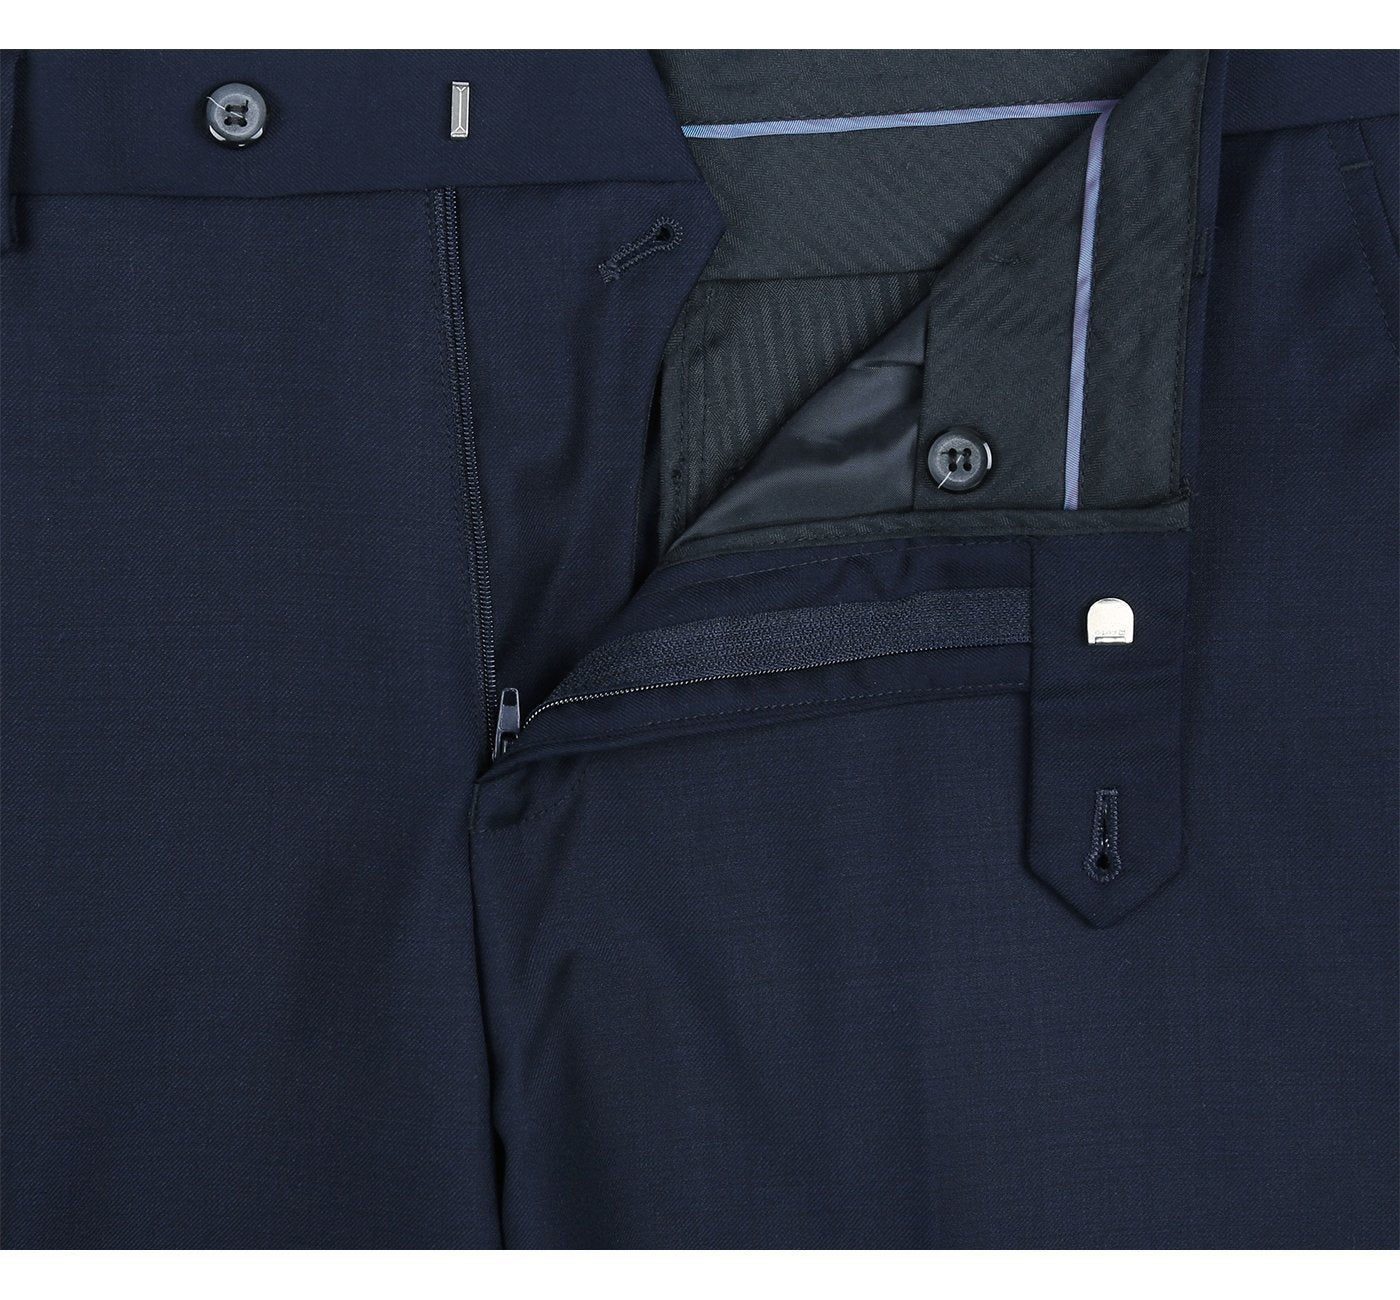 508-19 Men's Blue Classic Fit Flat Front Wool Suit Pant